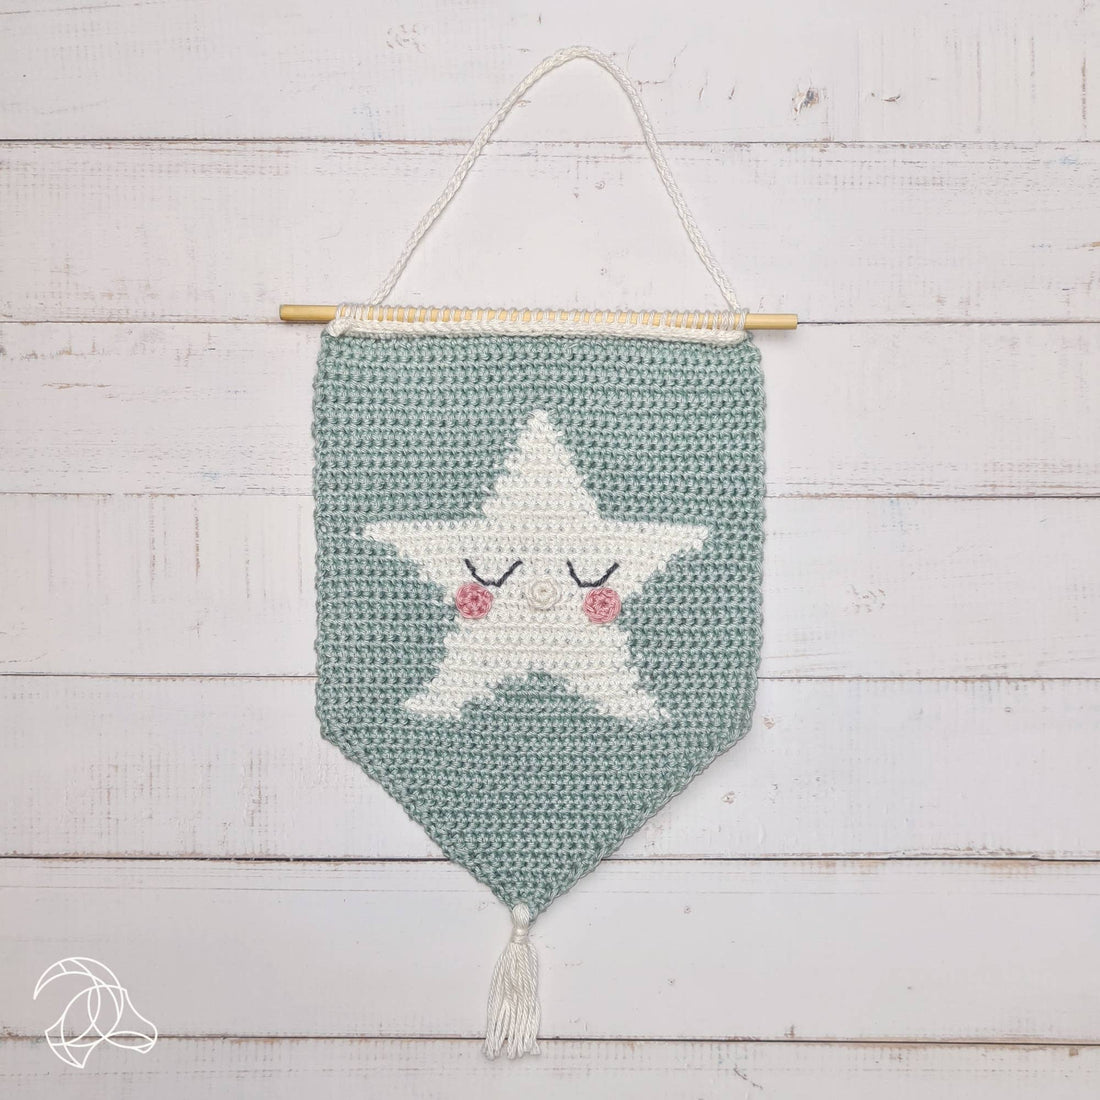 Star Banner Crochet Kit